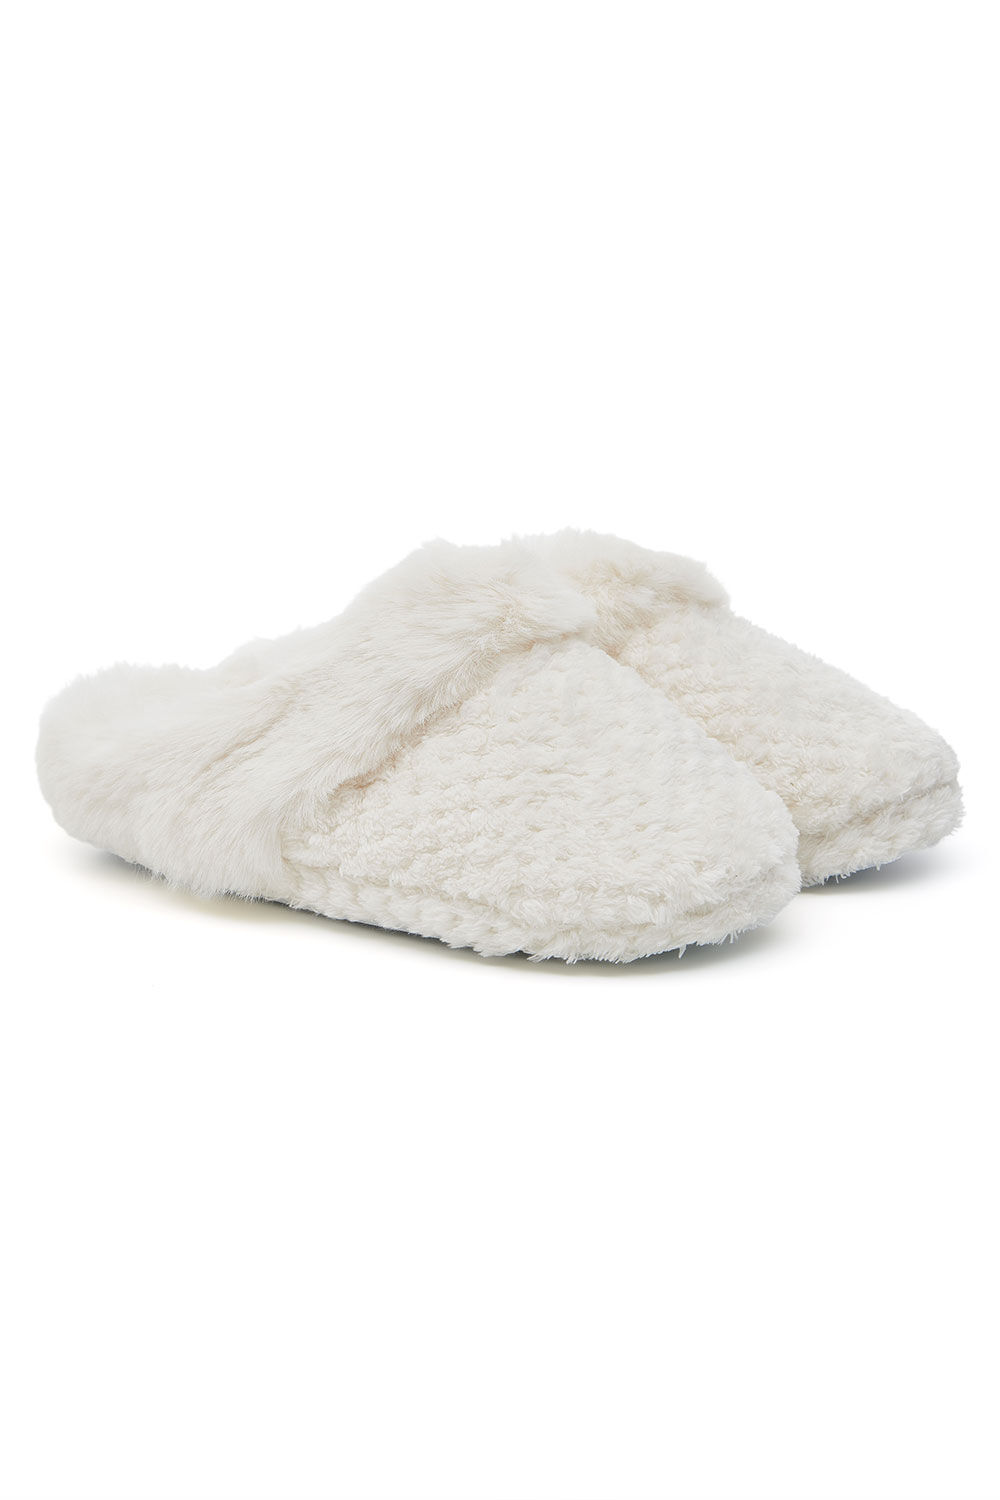 Bonmarche Ivory Fleece Fur Slippers, Size: 6